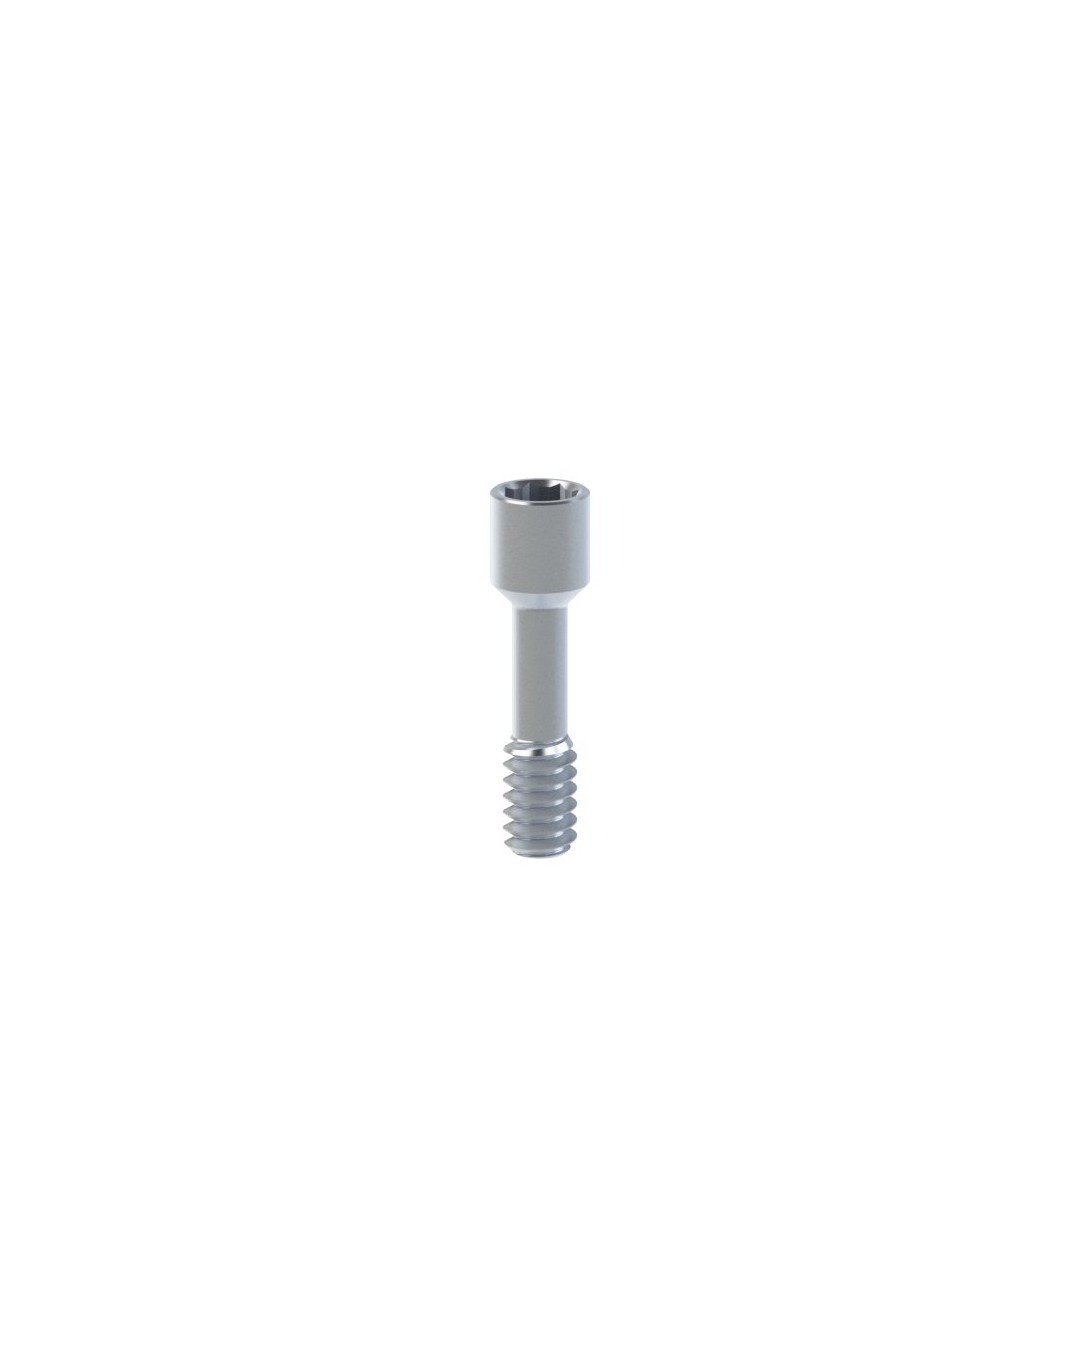 Titanium Screw compatible with Klockner® Vega